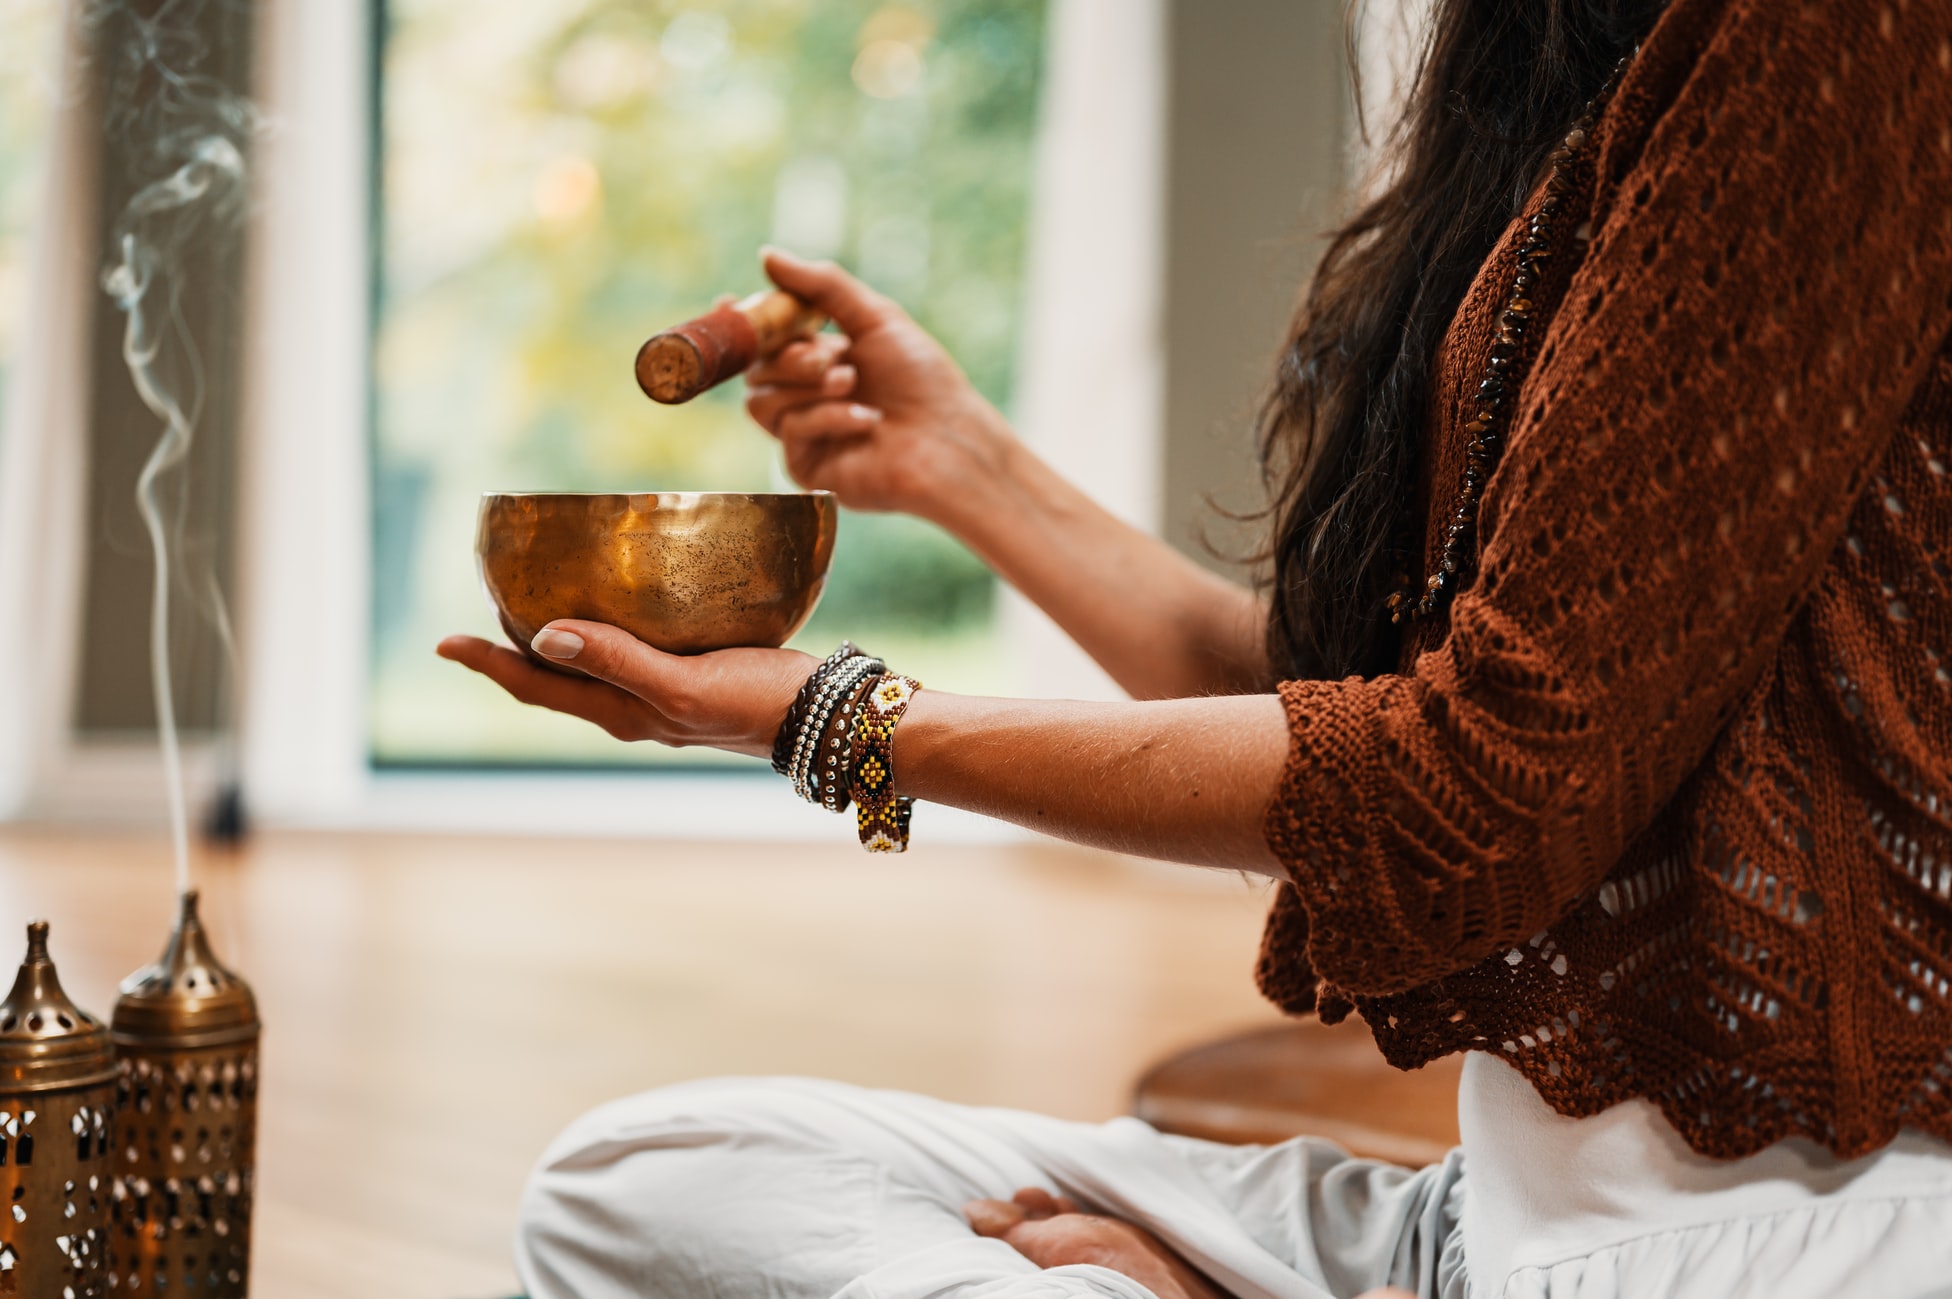 Come funziona la meditazione